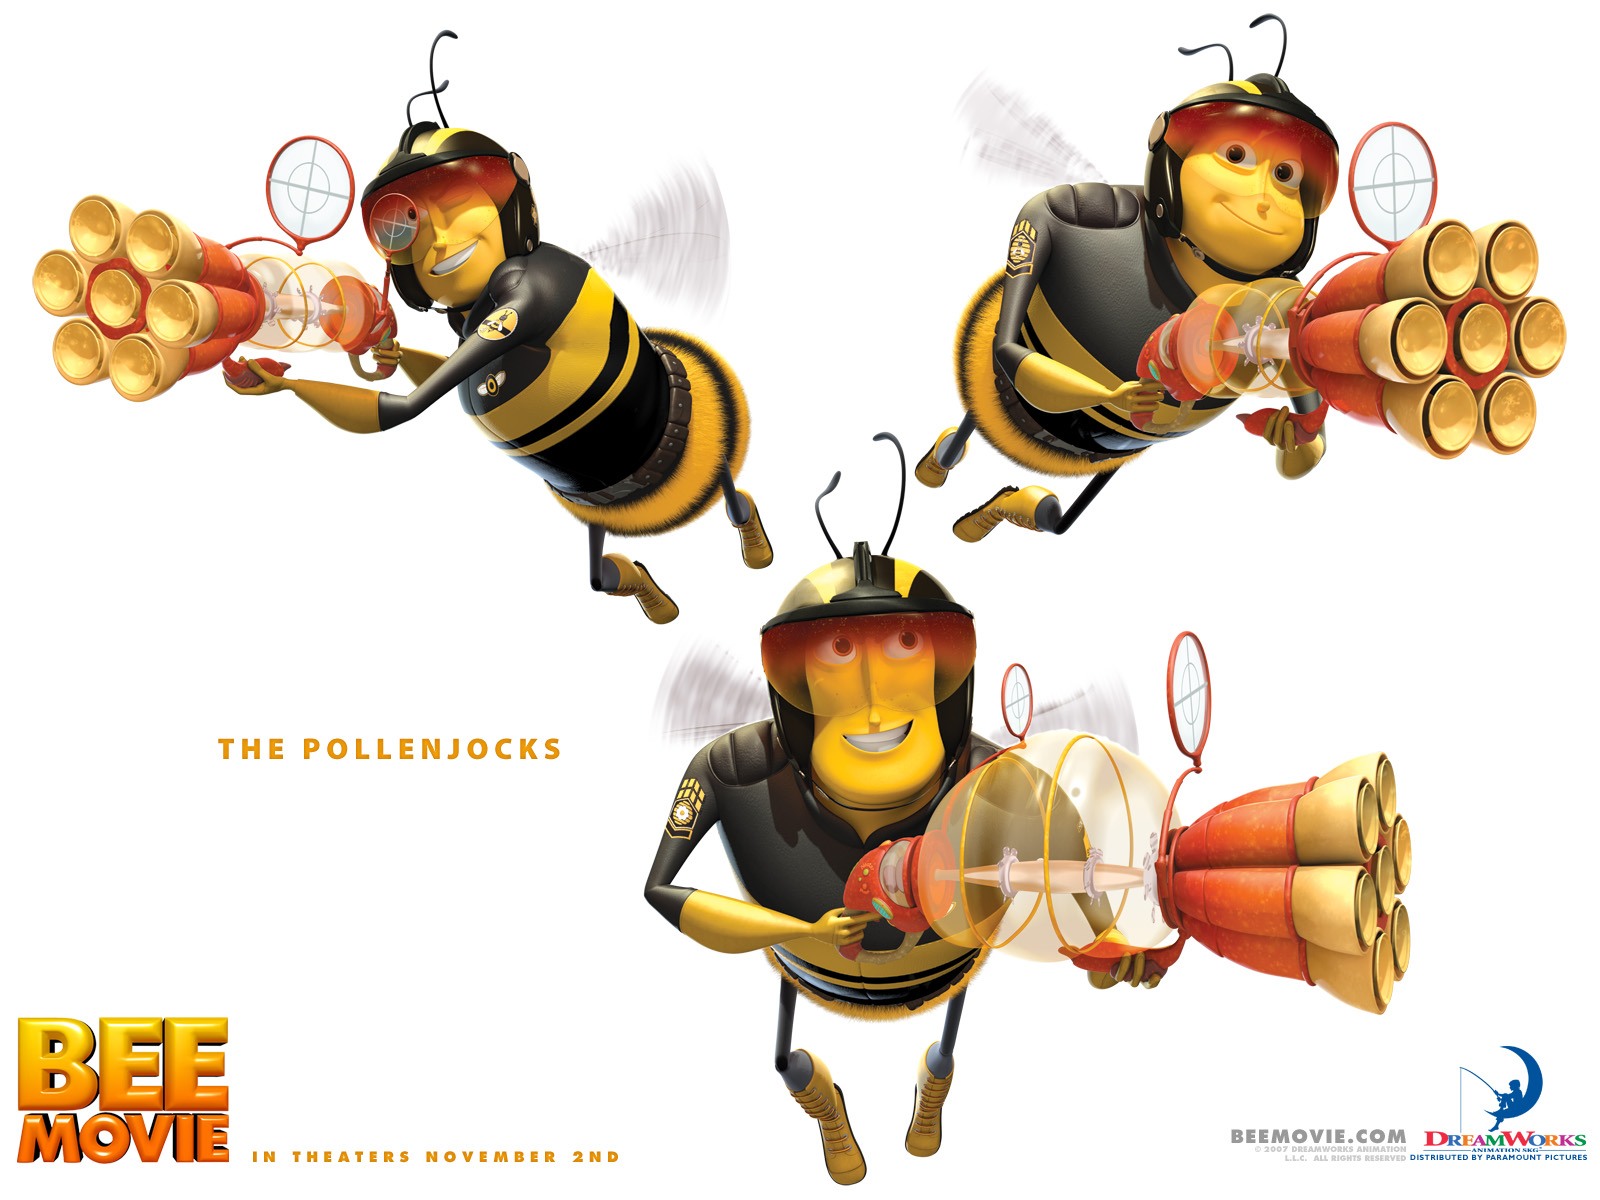 壁纸1600x1200电影壁纸 蜜蜂总动员 一只小蜜蜂 Bee Movie 2007 蜂电影 一只小蜜蜂壁纸 Movie Wallpaper Bee Movie 2007壁纸 《蜜蜂总动员 Bee Movie》壁纸 《蜜蜂总动员 Bee Movie》图片 《蜜蜂总动员 Bee Movie》素材 影视壁纸 影视图库 影视图片素材桌面壁纸